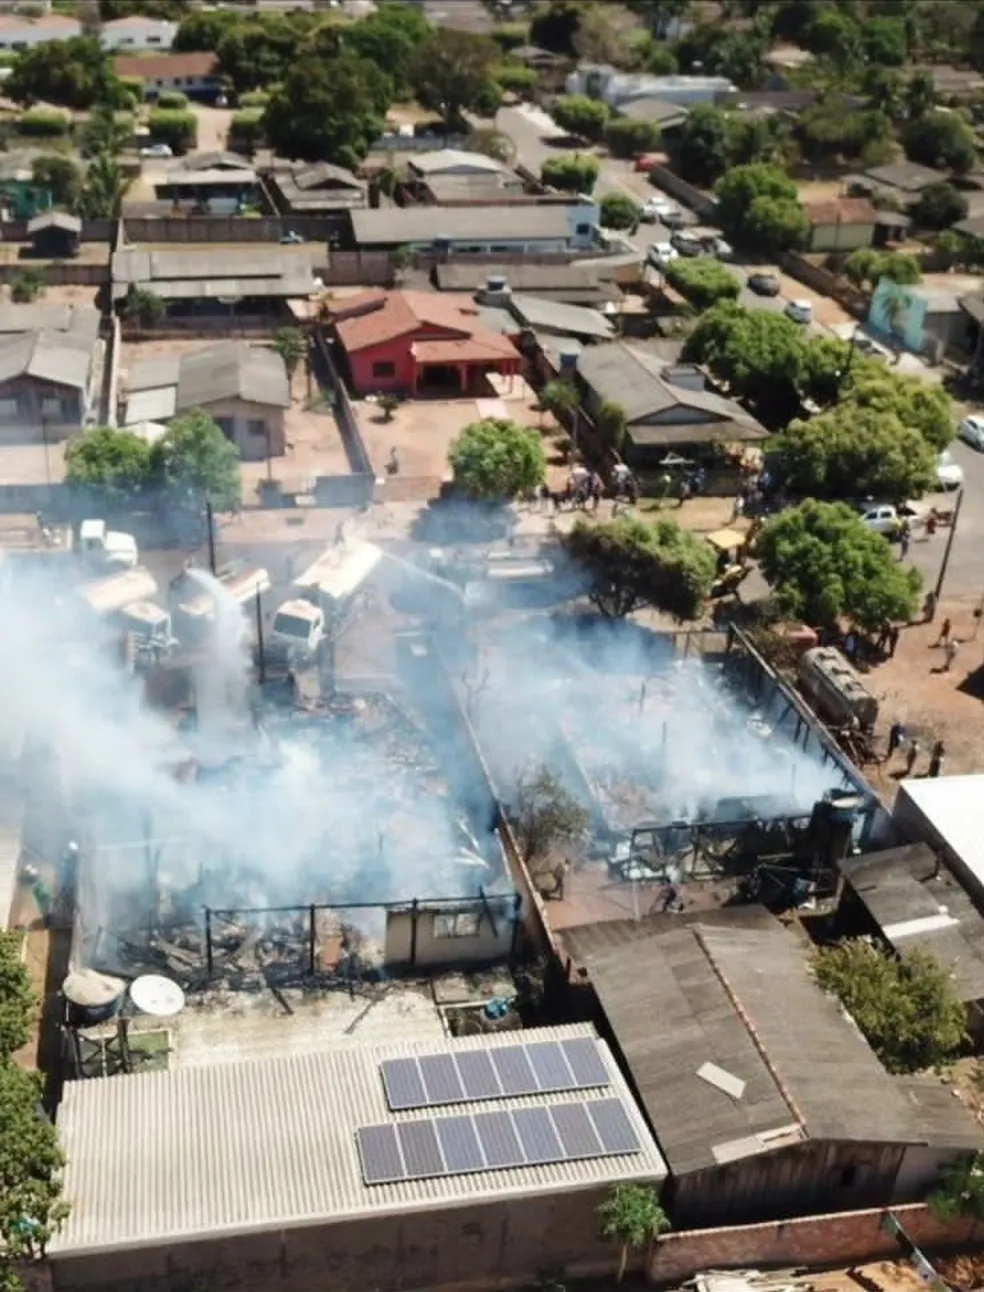 Homem ateia fogo na casa de parentes e incêndio atinge imóveis vizinhos em Marcelândia (MT)